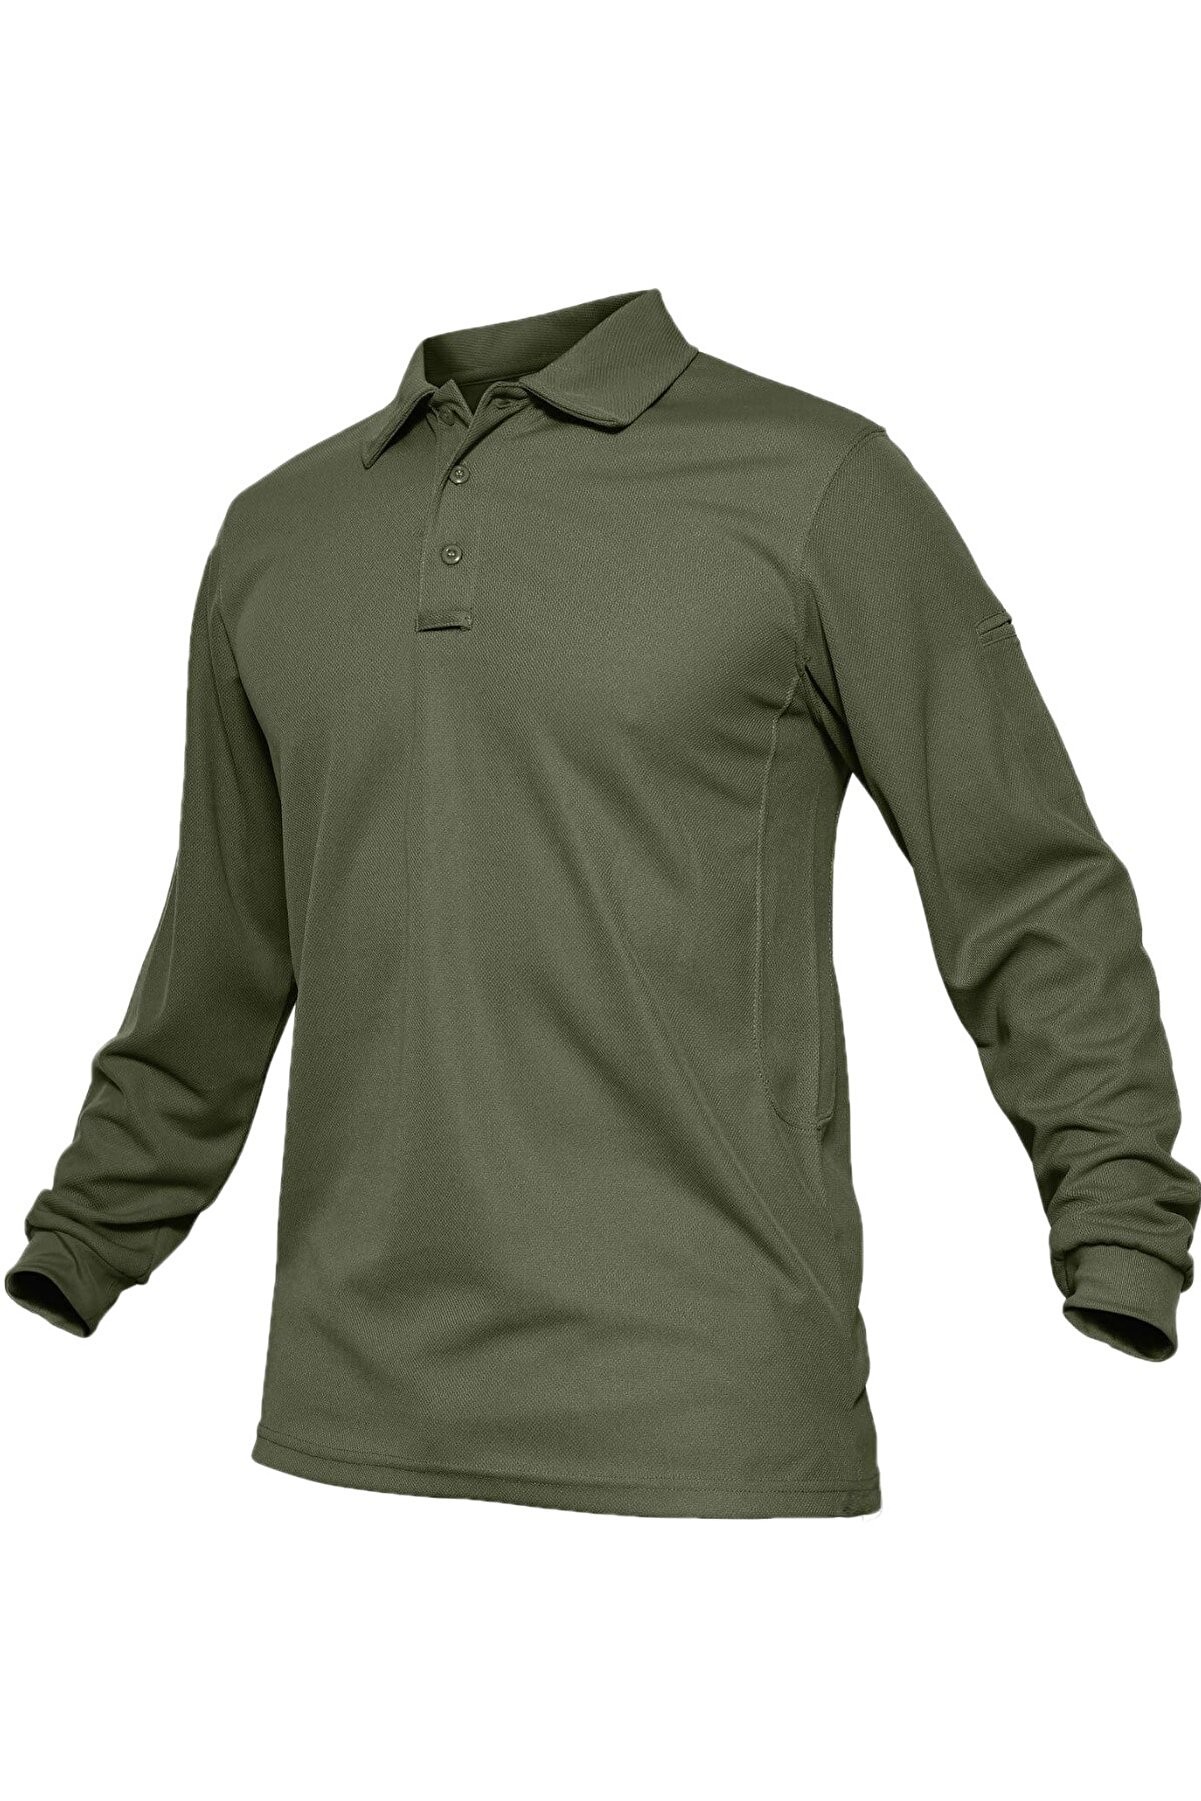 Ghassy Co. Erkek Jersey Golf Polo Gömlek Pike Performans Taktik Askeri Uzun Kollu T-Shirt - Haki